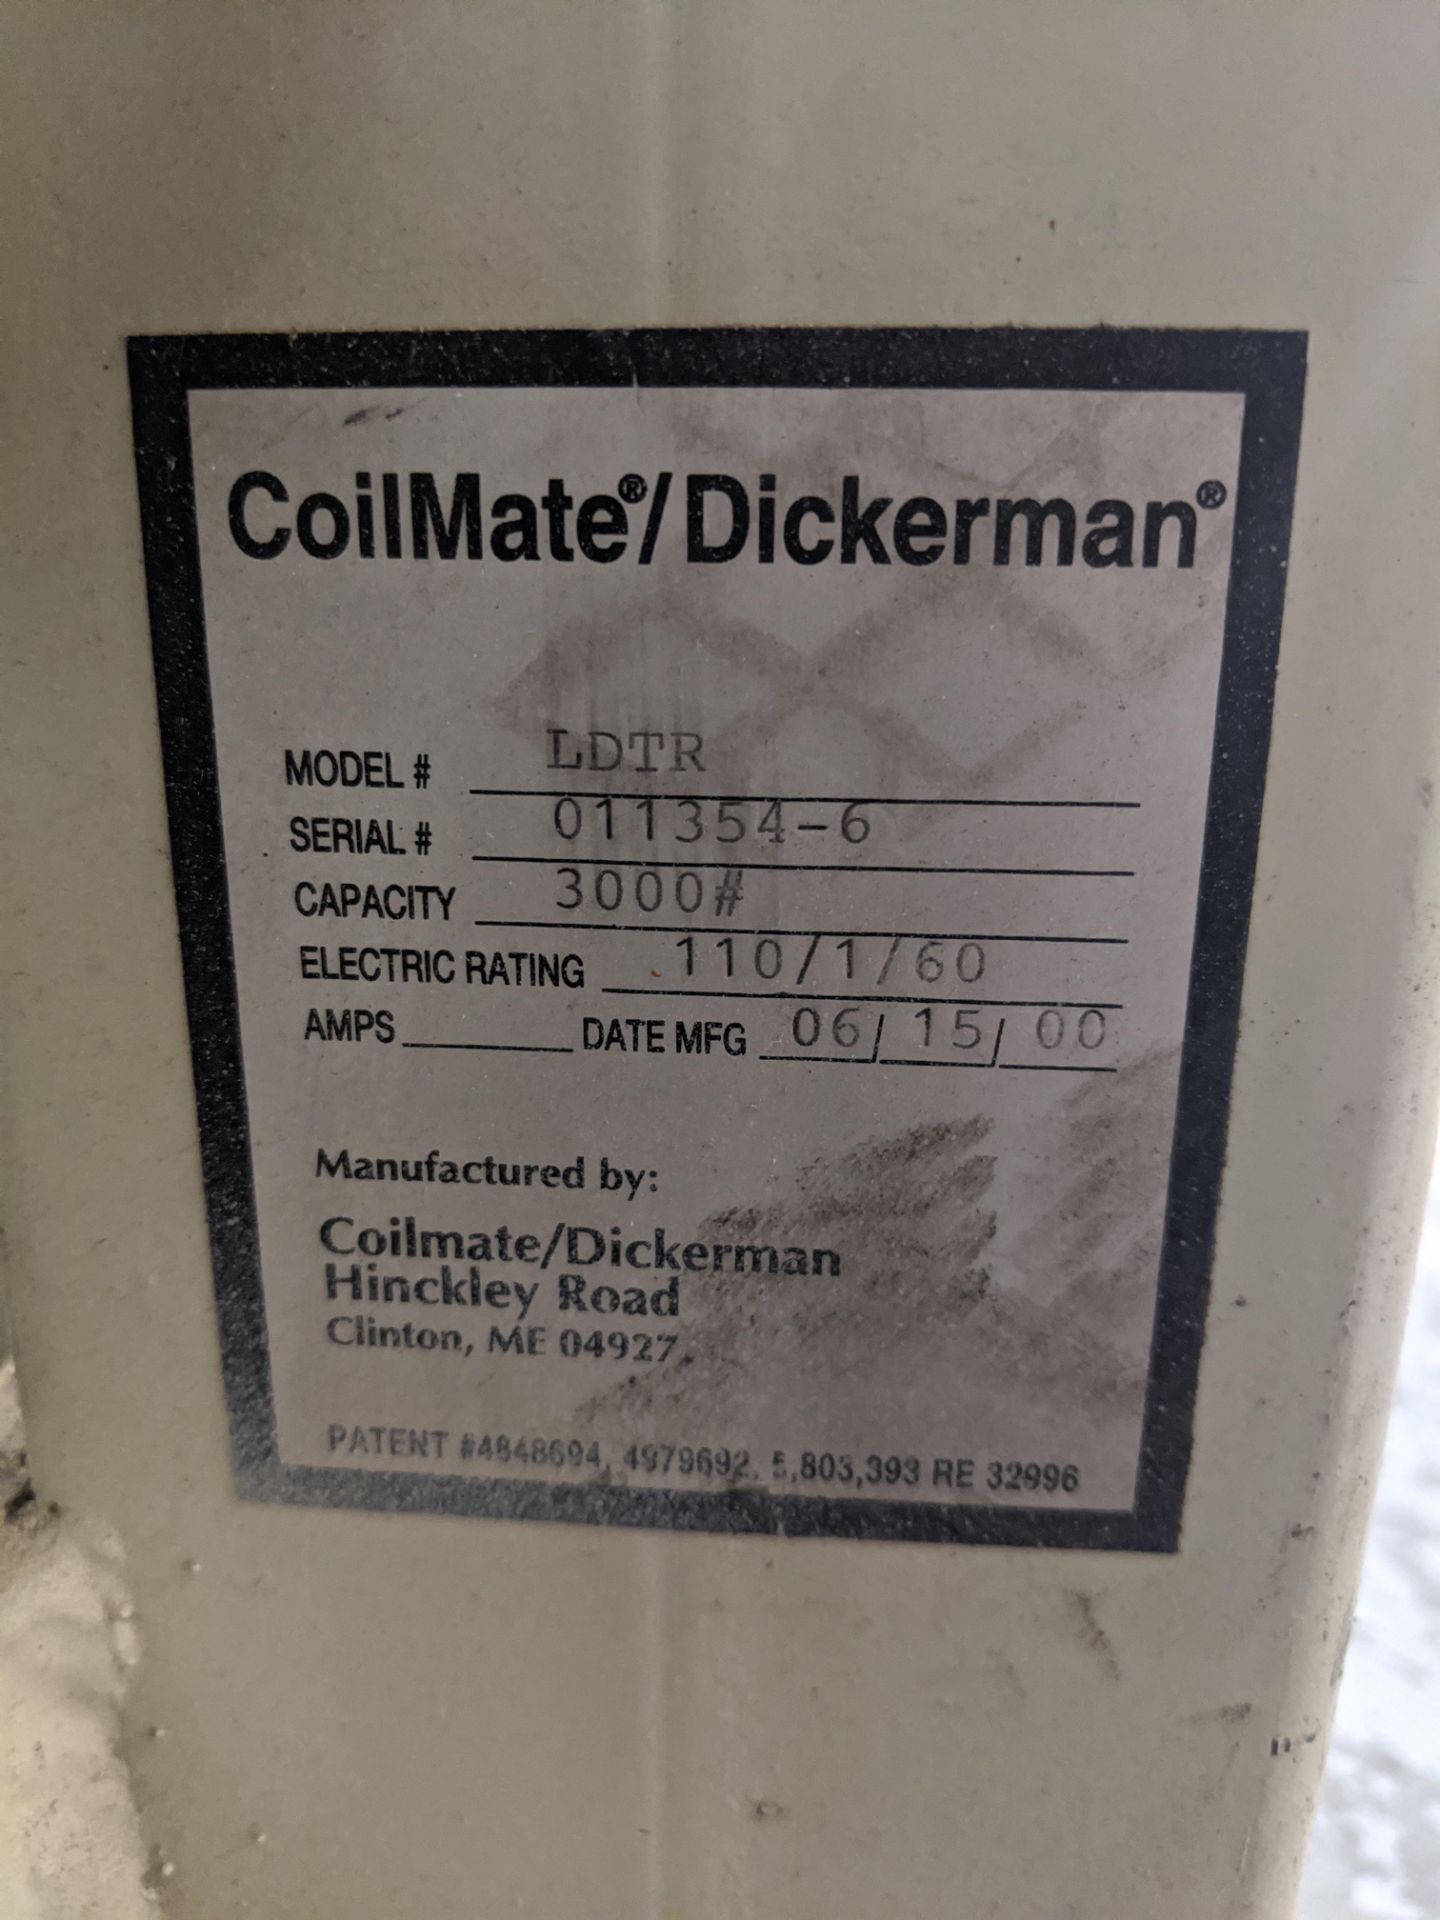 2000 Coilmate/Dickerman LDTR 3,000 Lb. Capacity DeCoiler, S/N: 011354-6 - Image 2 of 2